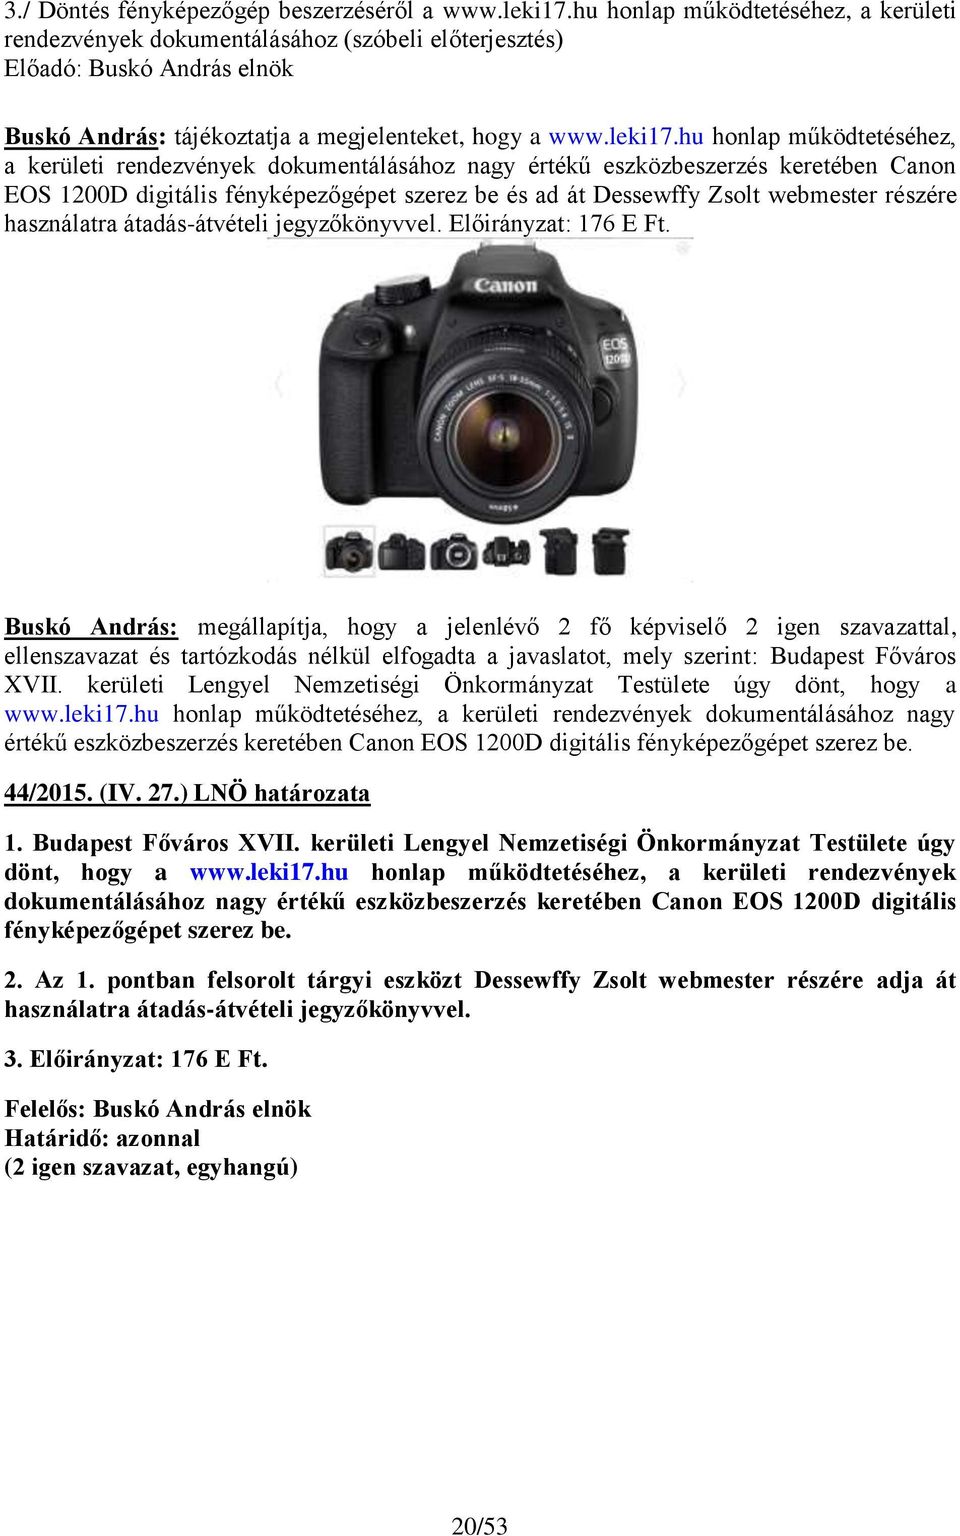 hu honlap működtetéséhez, a kerületi rendezvények dokumentálásához nagy értékű eszközbeszerzés keretében Canon EOS 1200D digitális fényképezőgépet szerez be és ad át Dessewffy Zsolt webmester részére